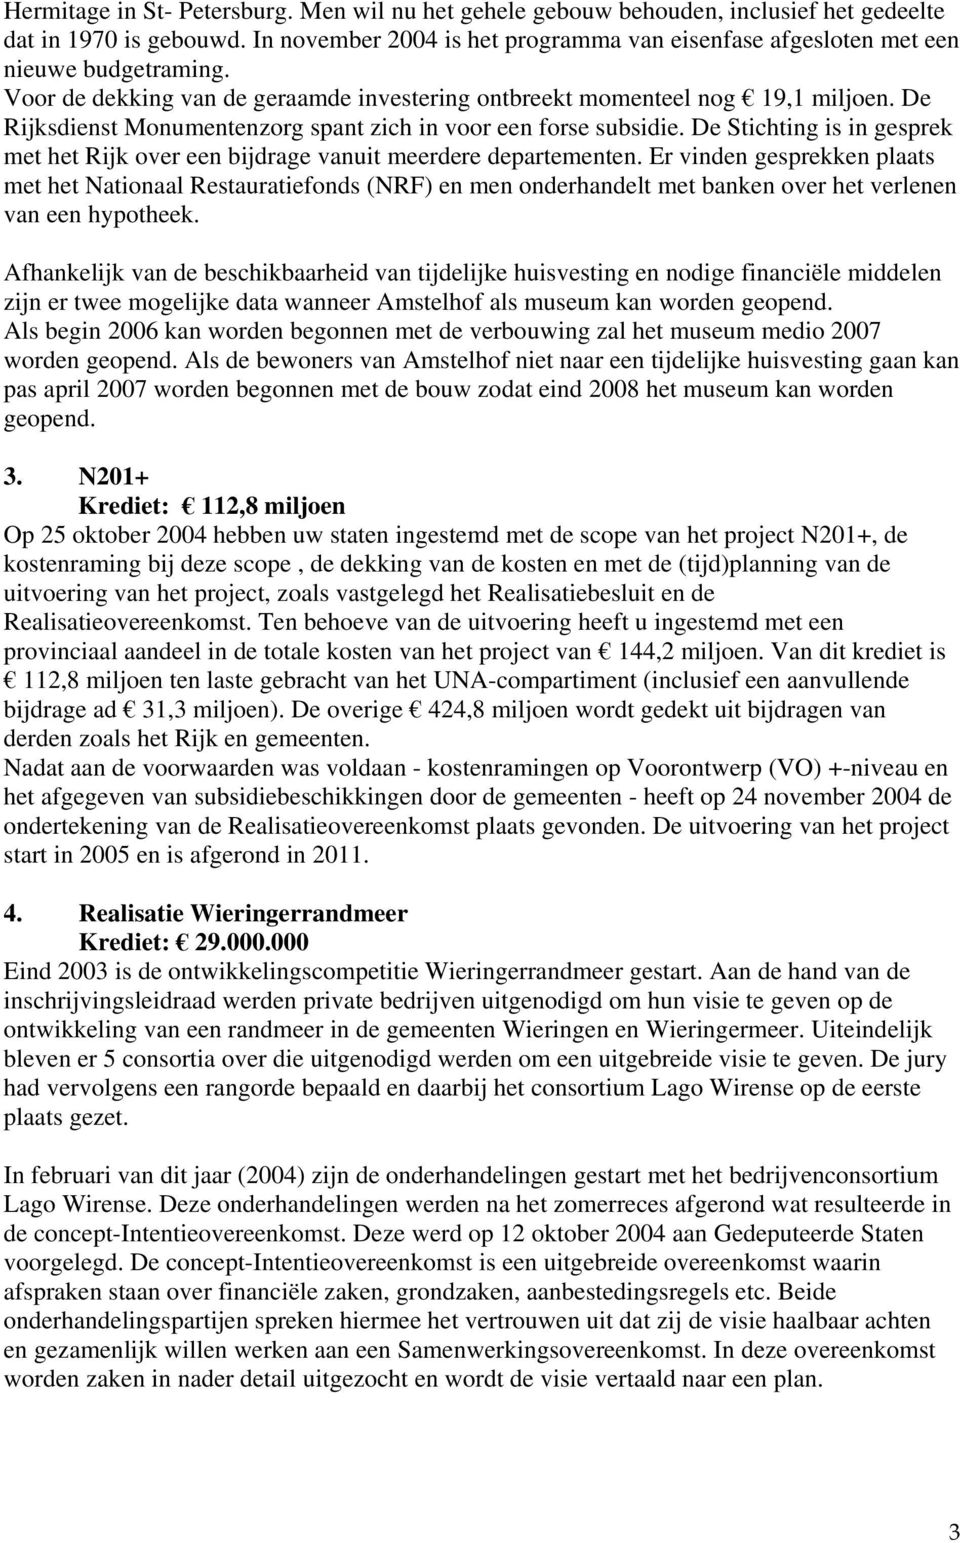 De Rijksdienst Monumentenzorg spant zich in voor een forse subsidie. De Stichting is in gesprek met het Rijk over een bijdrage vanuit meerdere departementen.